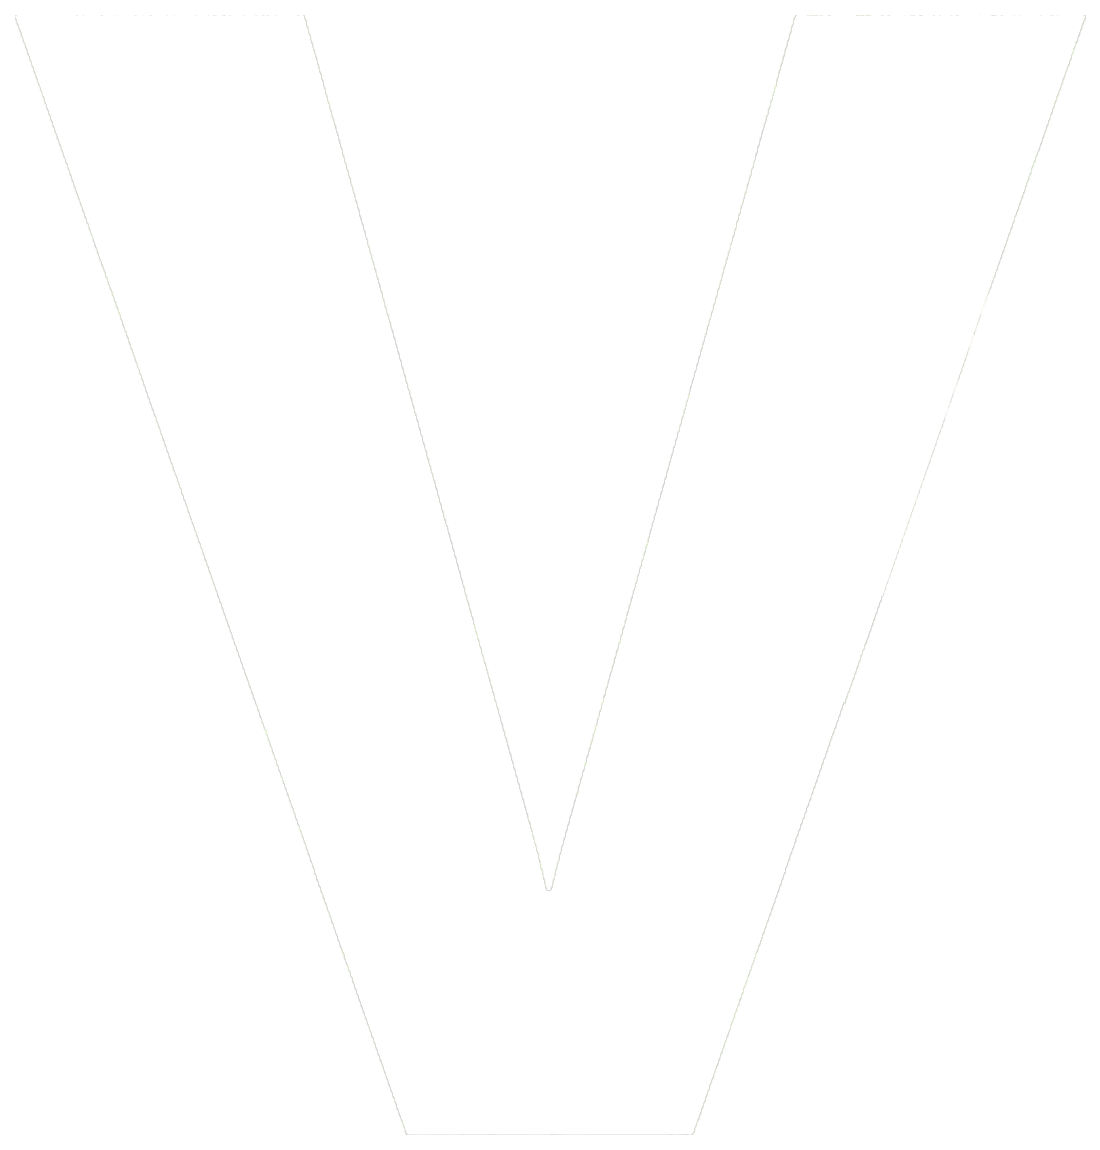 the V